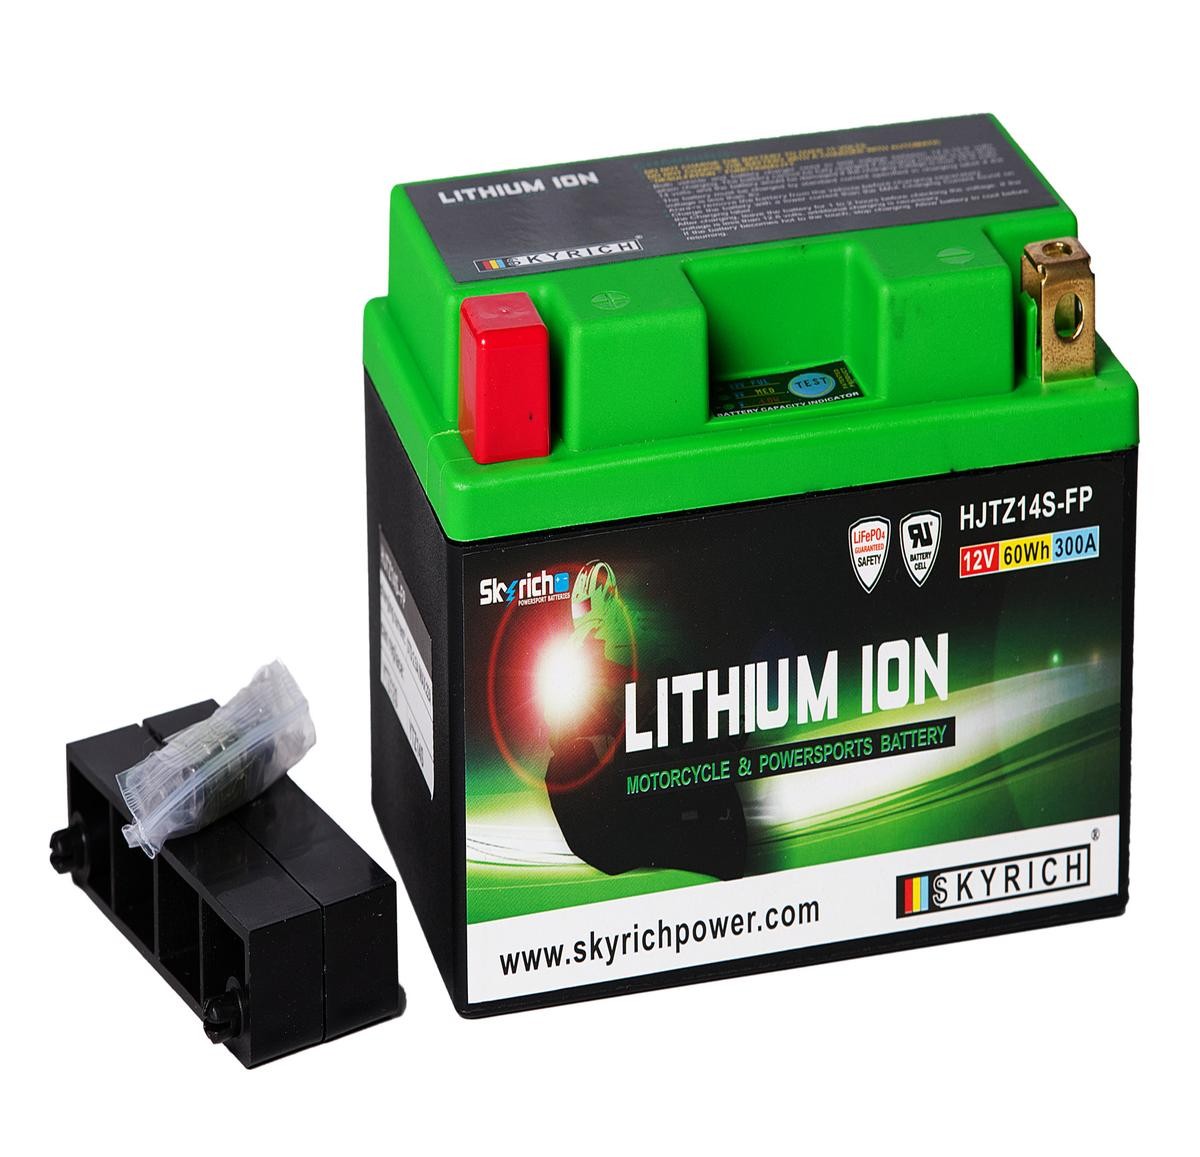 Auxiliary battery SKYRICH LITHIUM ION 12V 5Ah 300A N Li-Ion Battery - HJTZ14S-FP